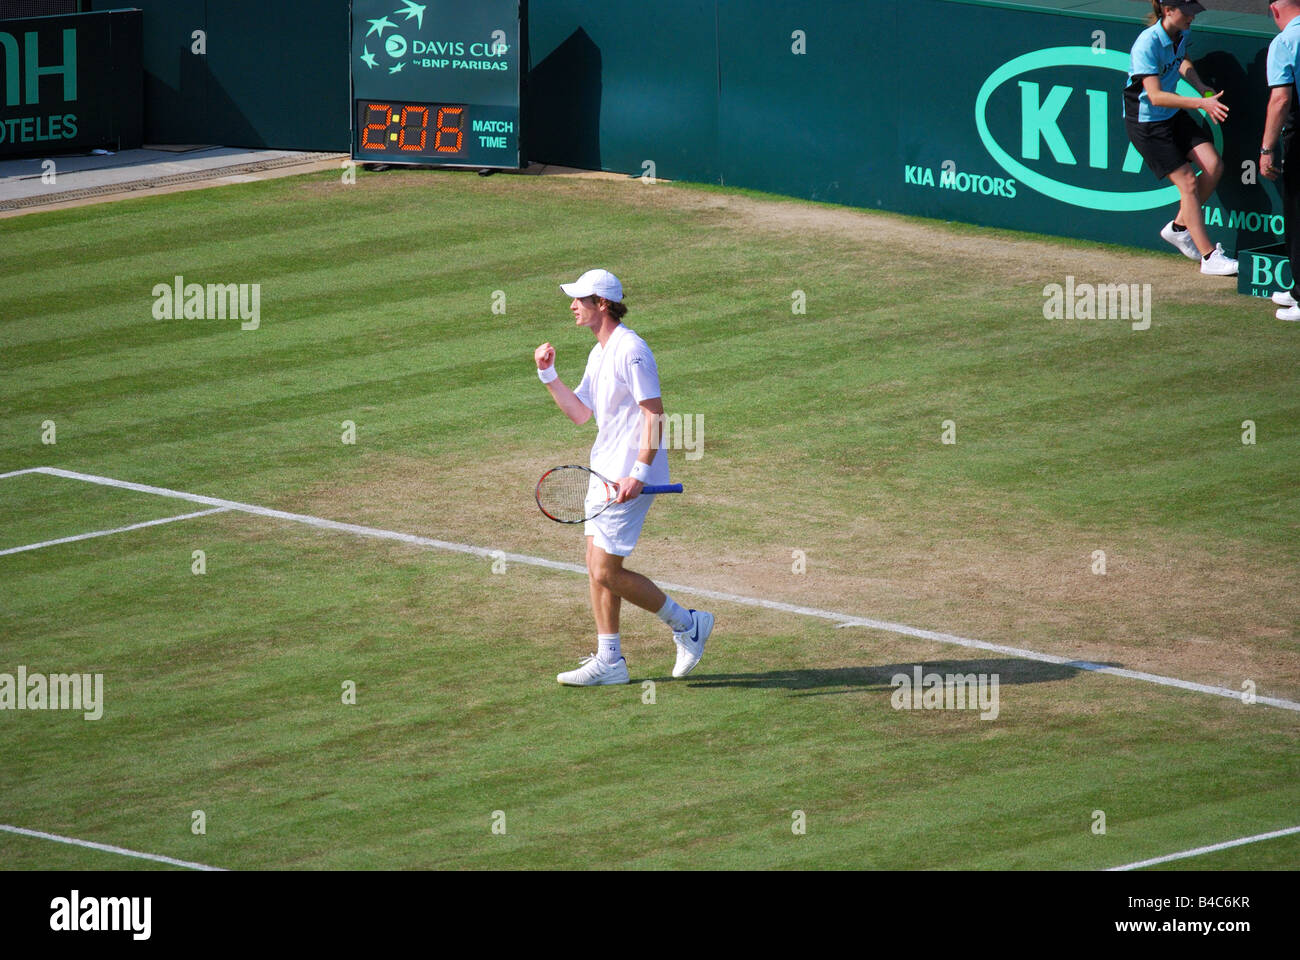 Andy Murray jouant, match de la coupe Davis, Grande-Bretagne contre Autriche, Wimbledon Lawn tennis Club, Borough of Merton, Grand Londres, Angleterre, Royaume-Uni Banque D'Images